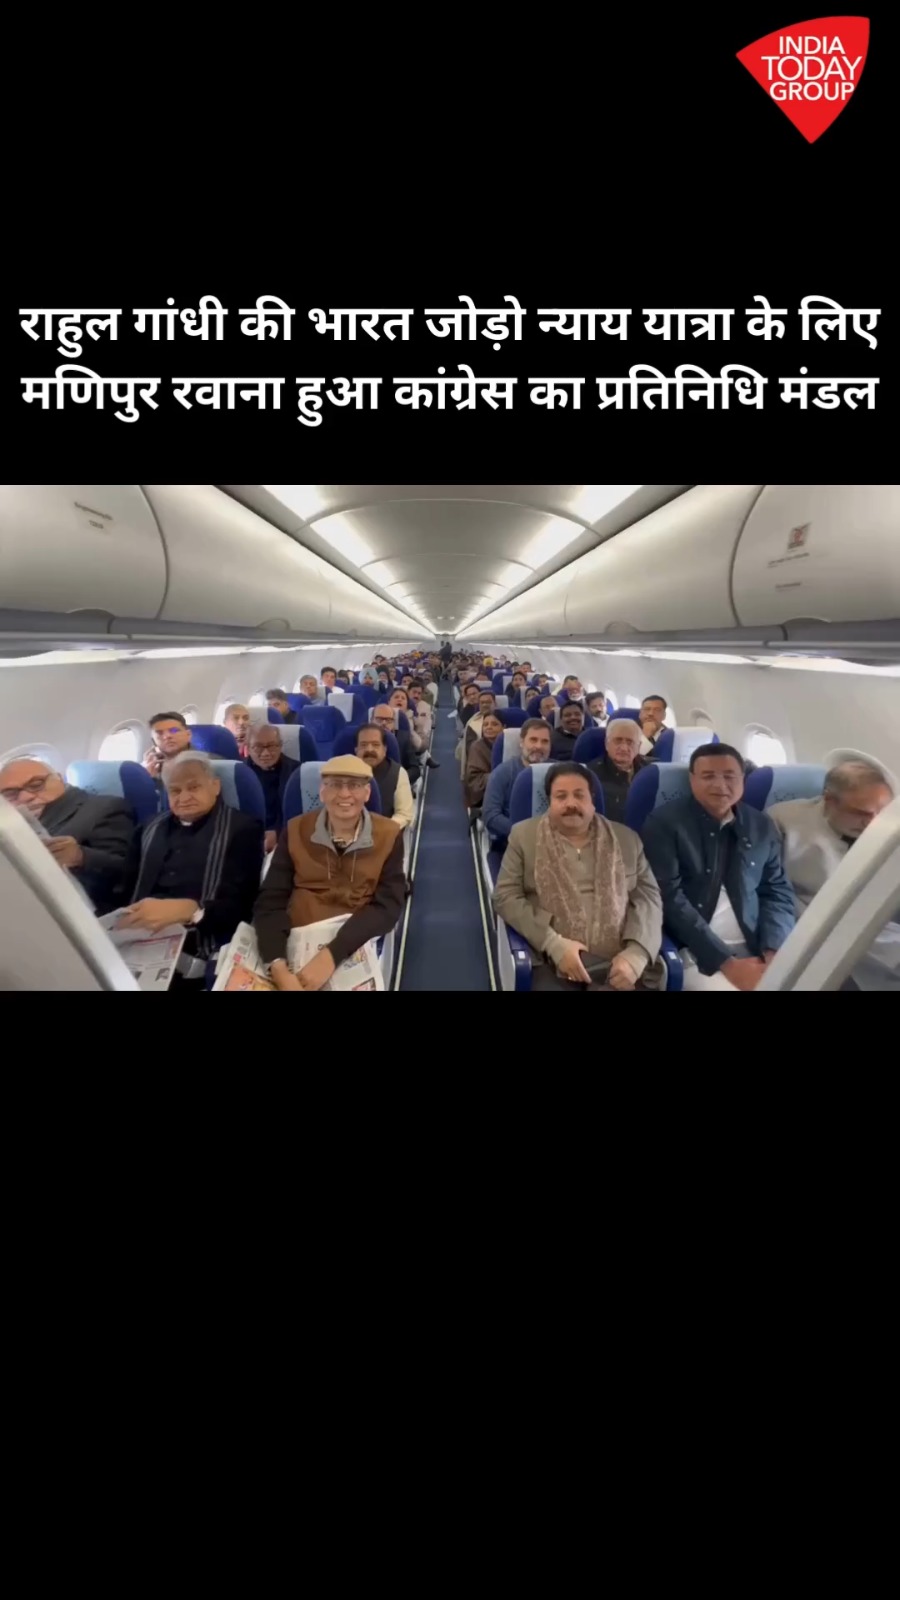 कांग्रेस नेता राहुल गांधी की भारत जोड़ो न्याय यात्रा का आज से आरंभ हो रहा है. इस बीच कांग्रेस का एक बड़ा प्रतिनिधि मंडल यात्रा की शुरूआत के लिए मणिपुर रवाना हो रहा है. इस मंडल में सचिन पायलट, अशोक गहलोत, पवन खेड़ा, दिग्विजय सिंह, सुप्रिया श्रीनेत समेत कई अन्य दिग्गज शामिल है.